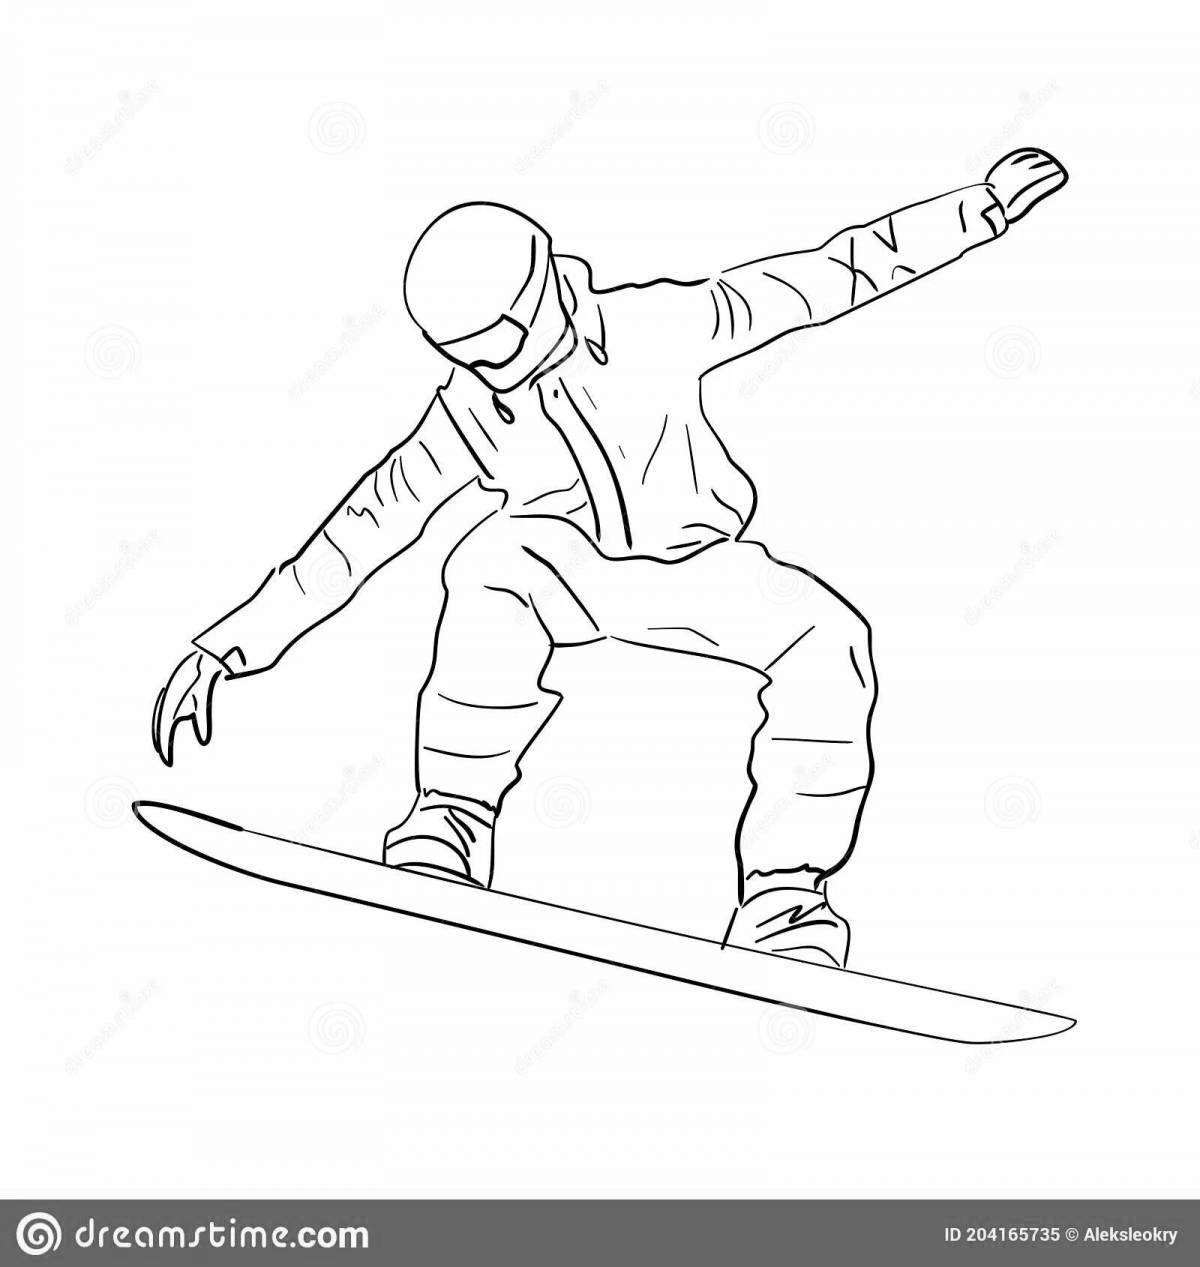 Сноубординг раскраска для детей